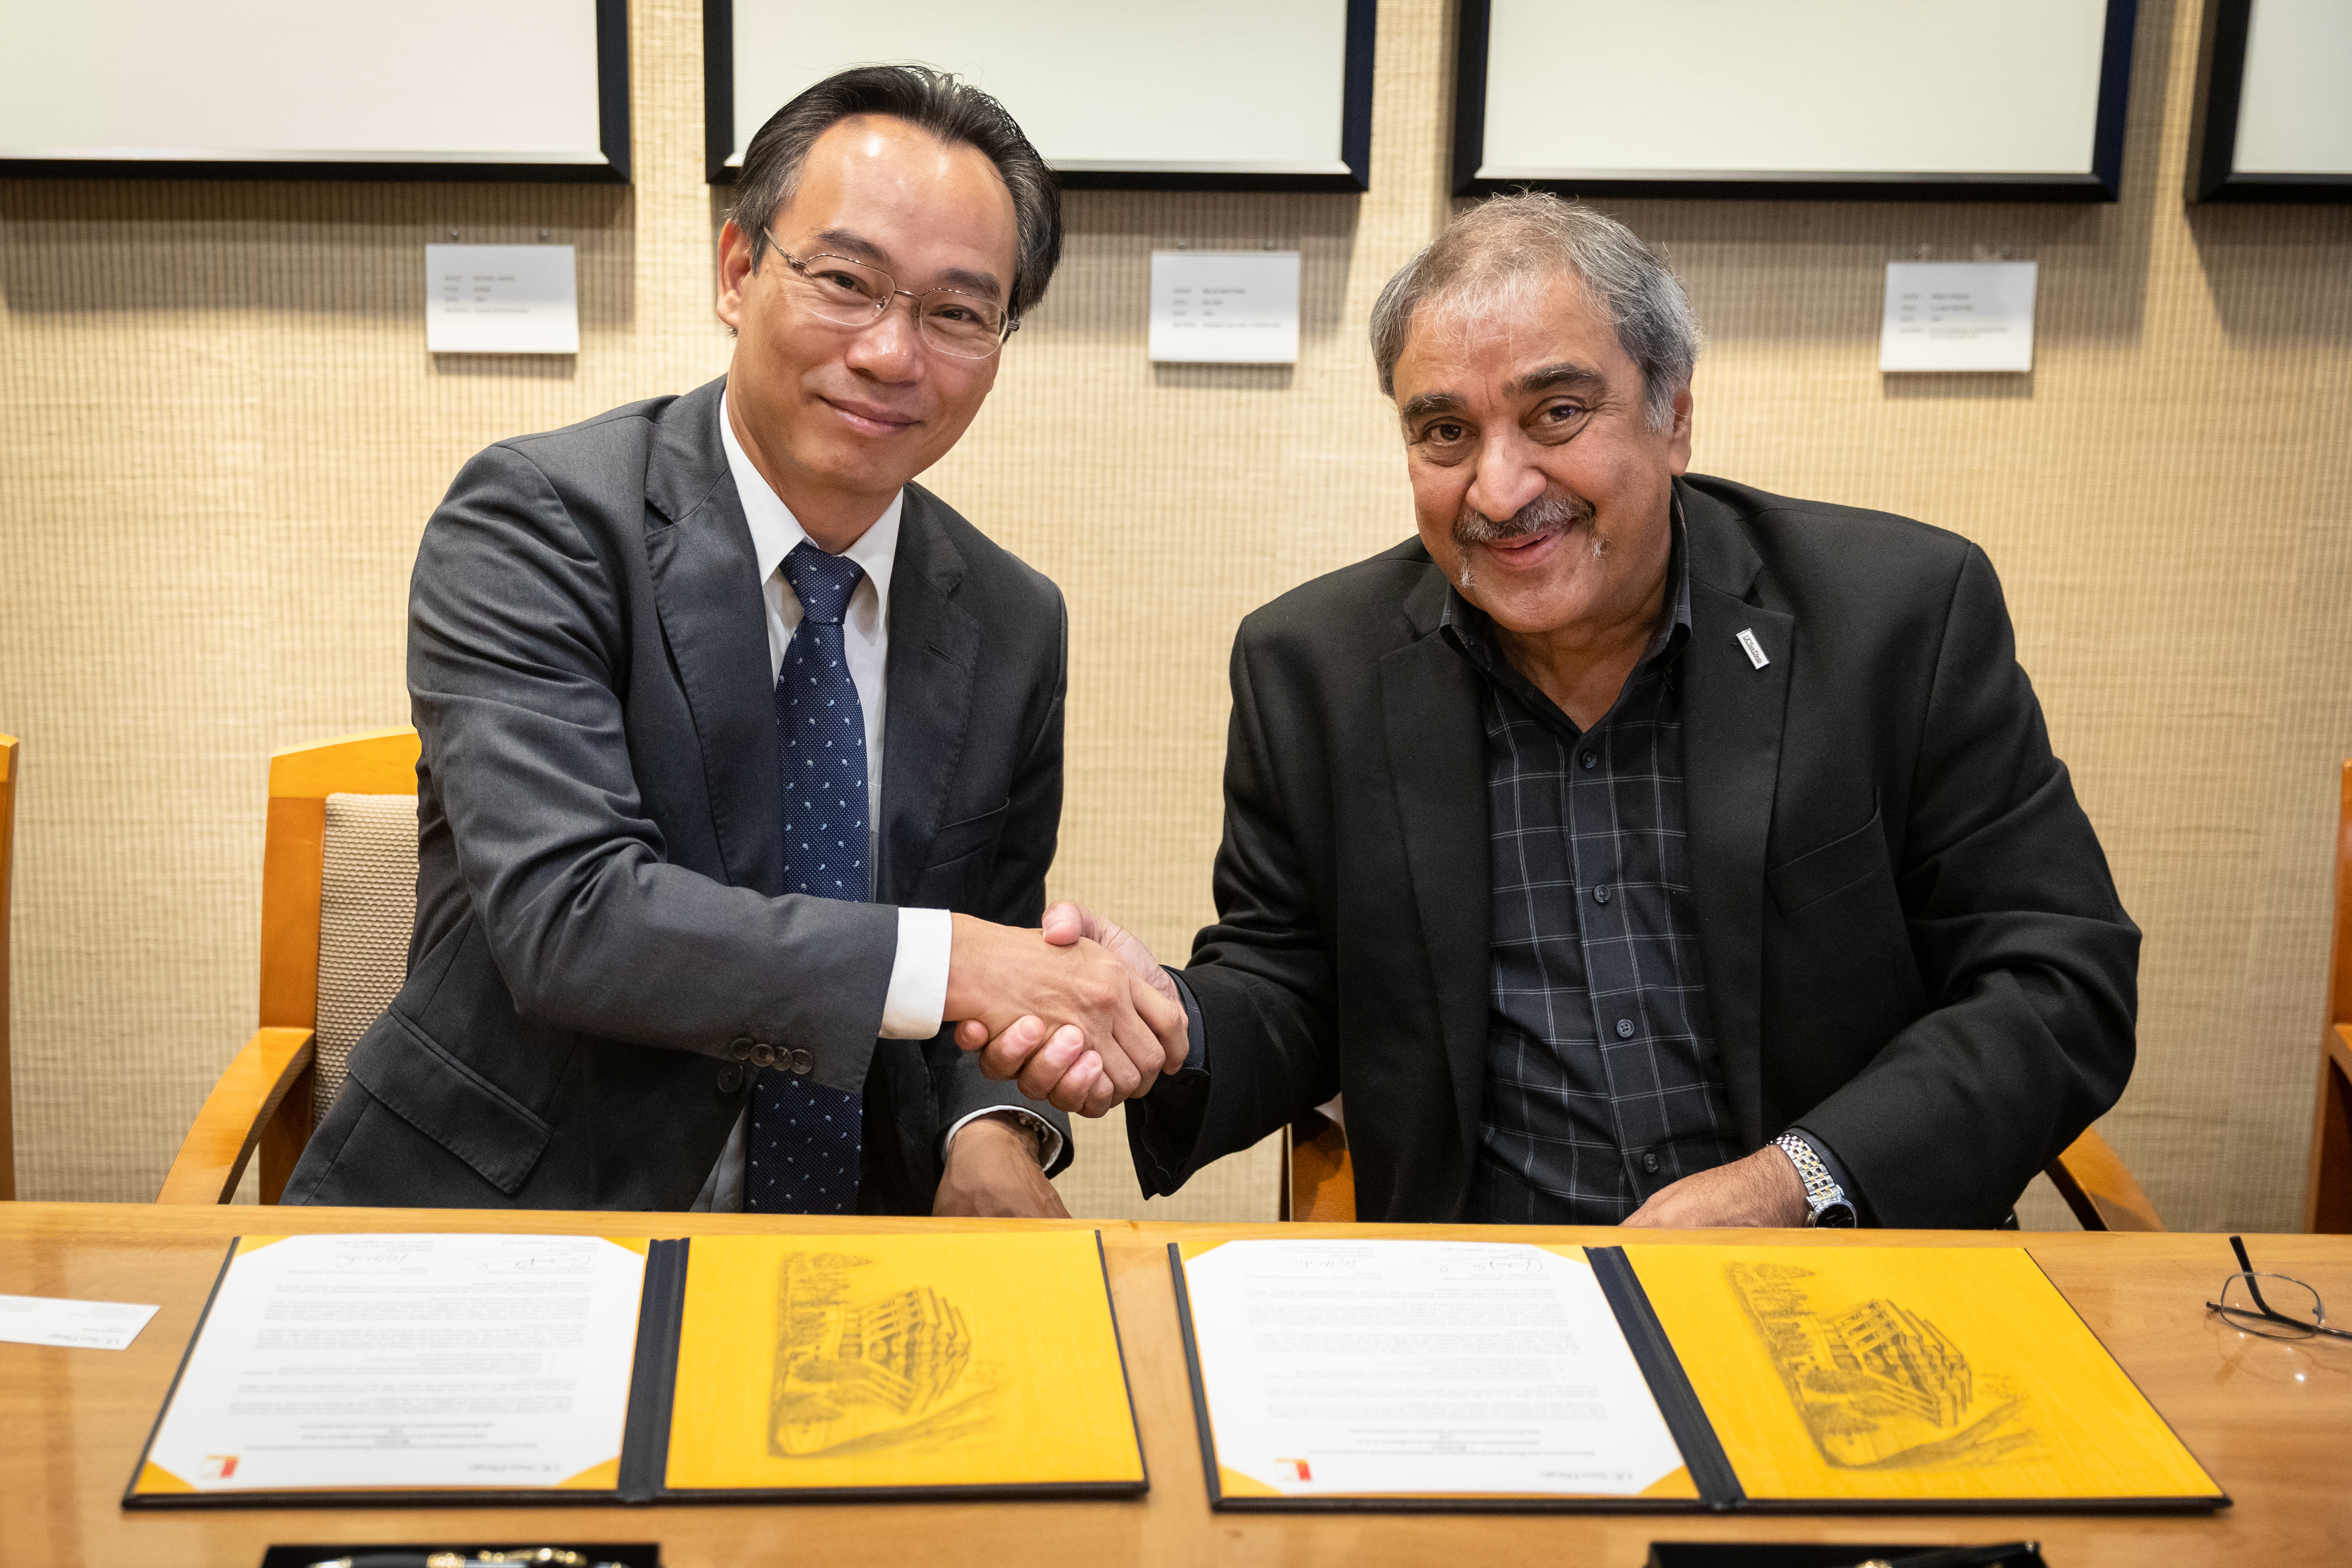 Hiệu trưởng Hoàng Minh Sơn và Hiệu trưởng Pradeep Khosla trong lễ ký biên bản ghi nhớ hợp tác về đào tạo và nghiên cứu khoa học giữa Đại học Bách khoa Hà Nội với Đại học California, San Diego, 22/8/2019. Ảnh: HUST